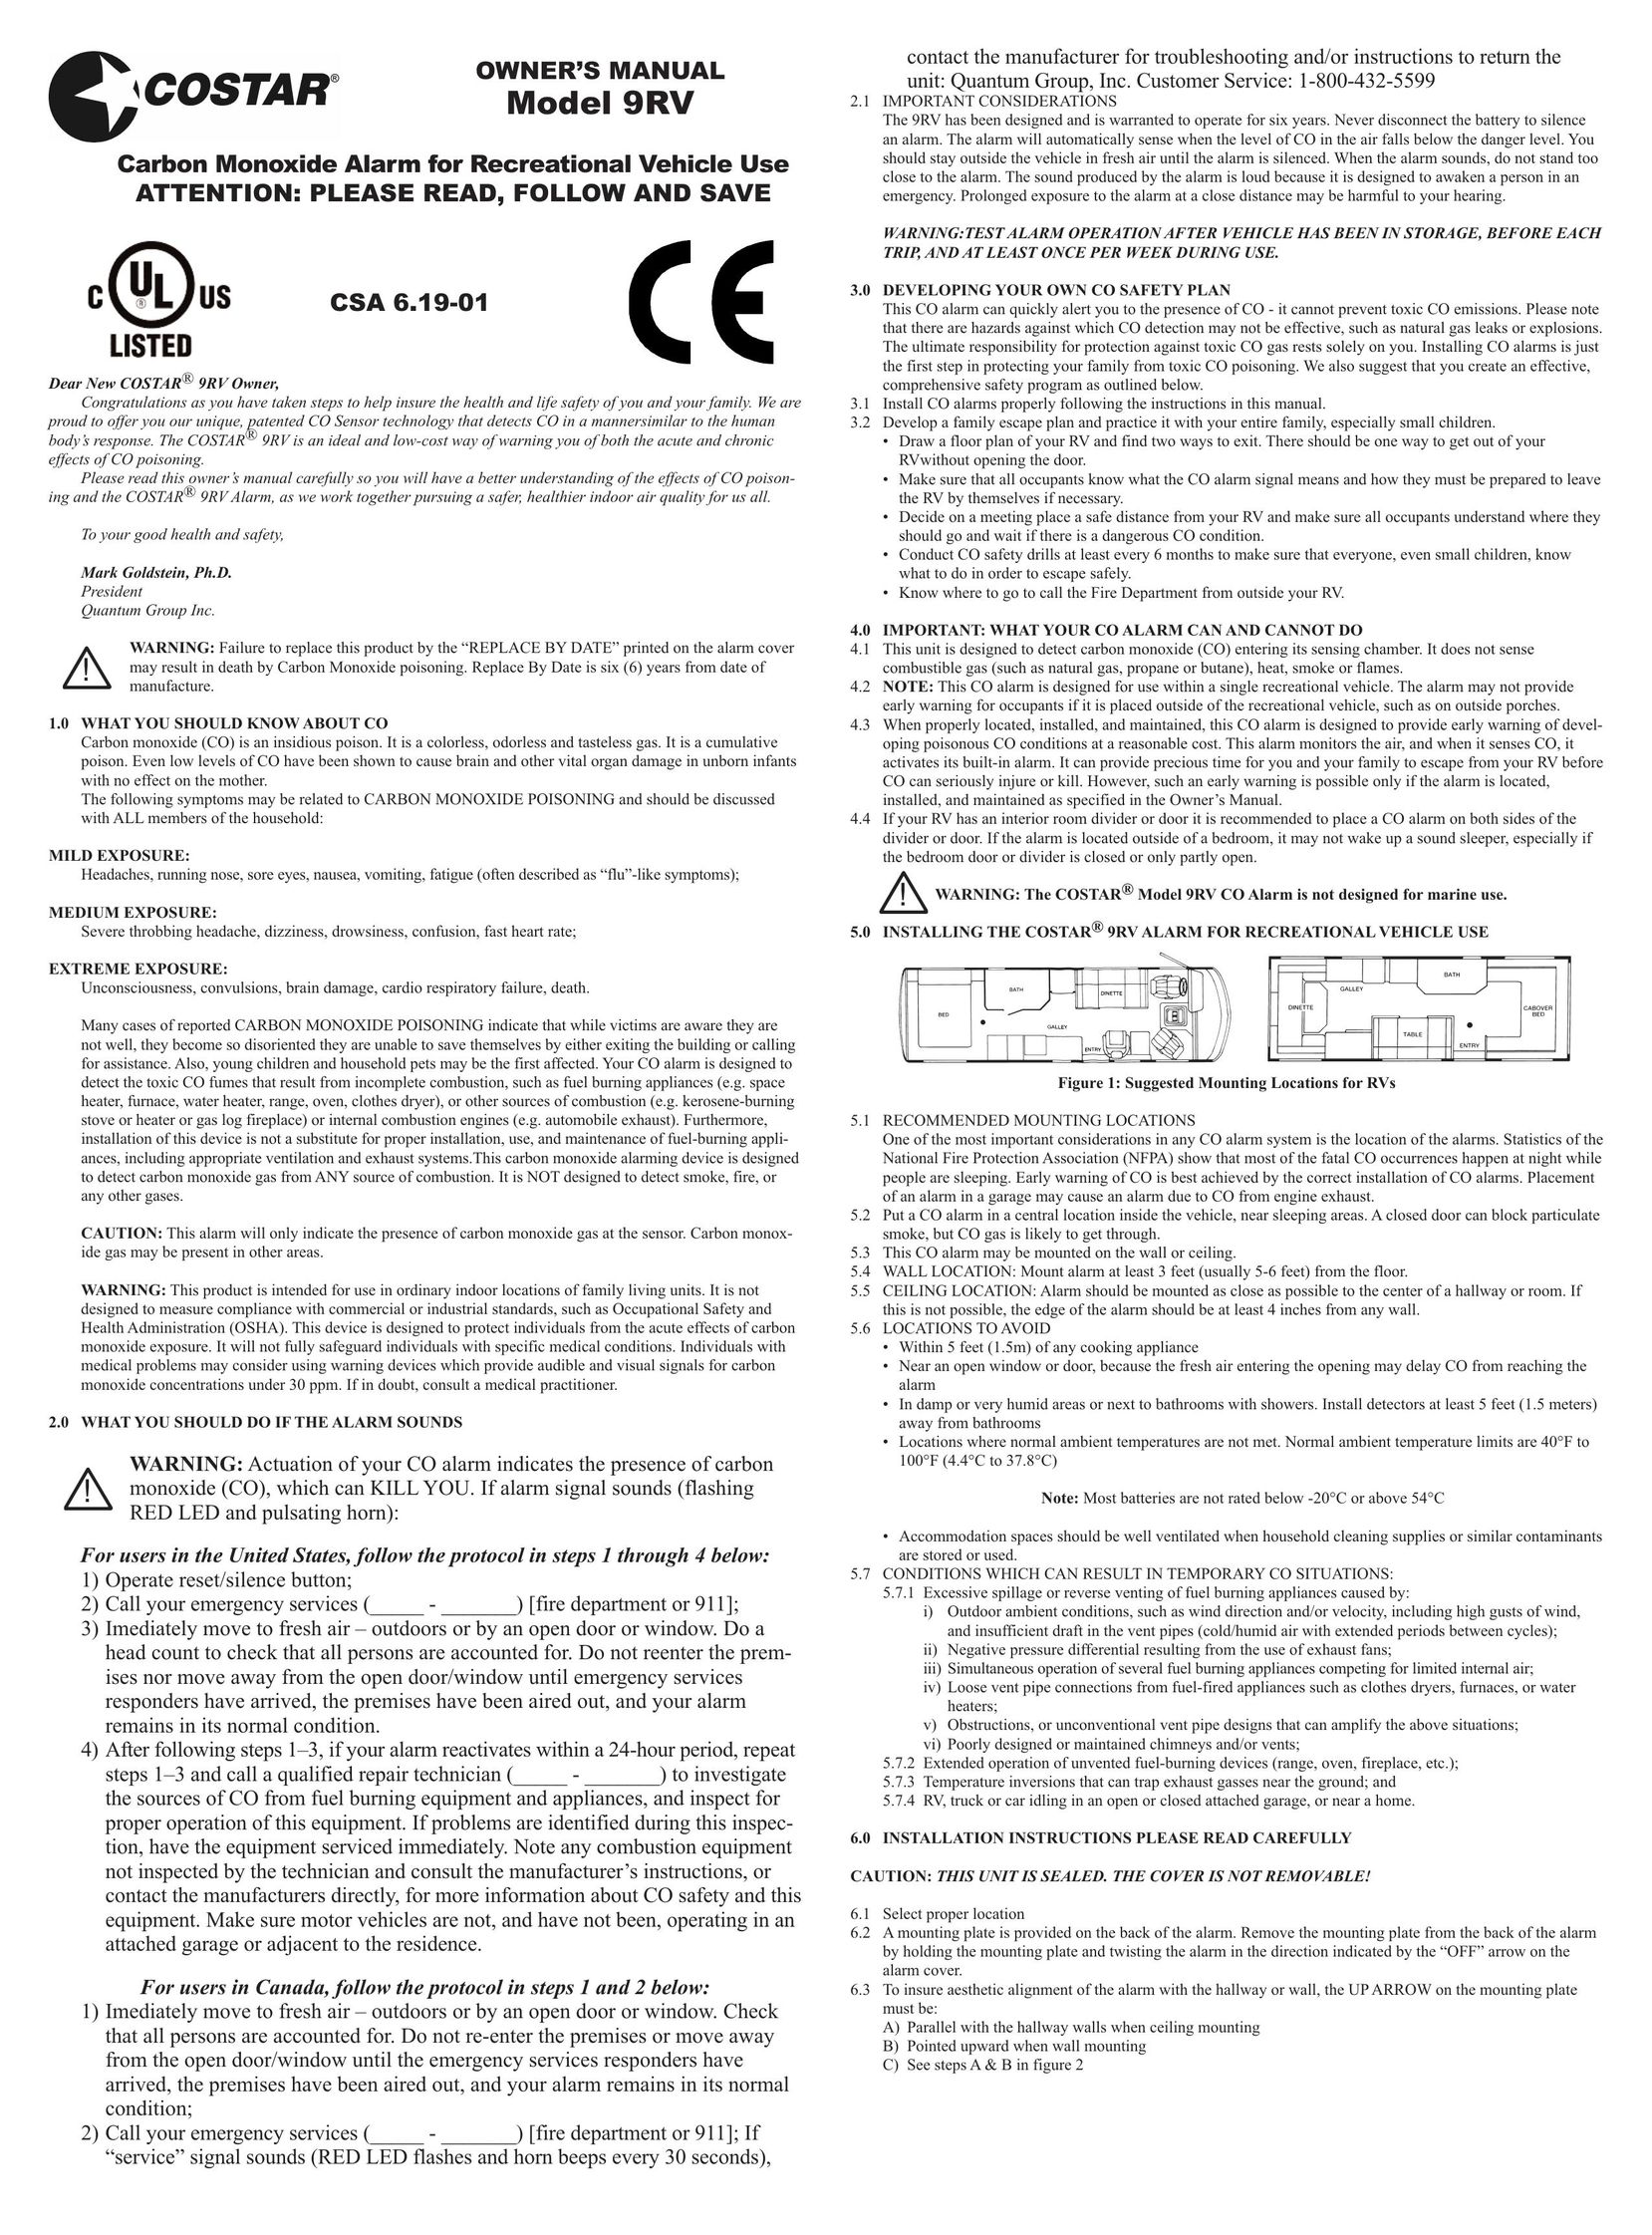 Costar 9RV Carbon Monoxide Alarm User Manual